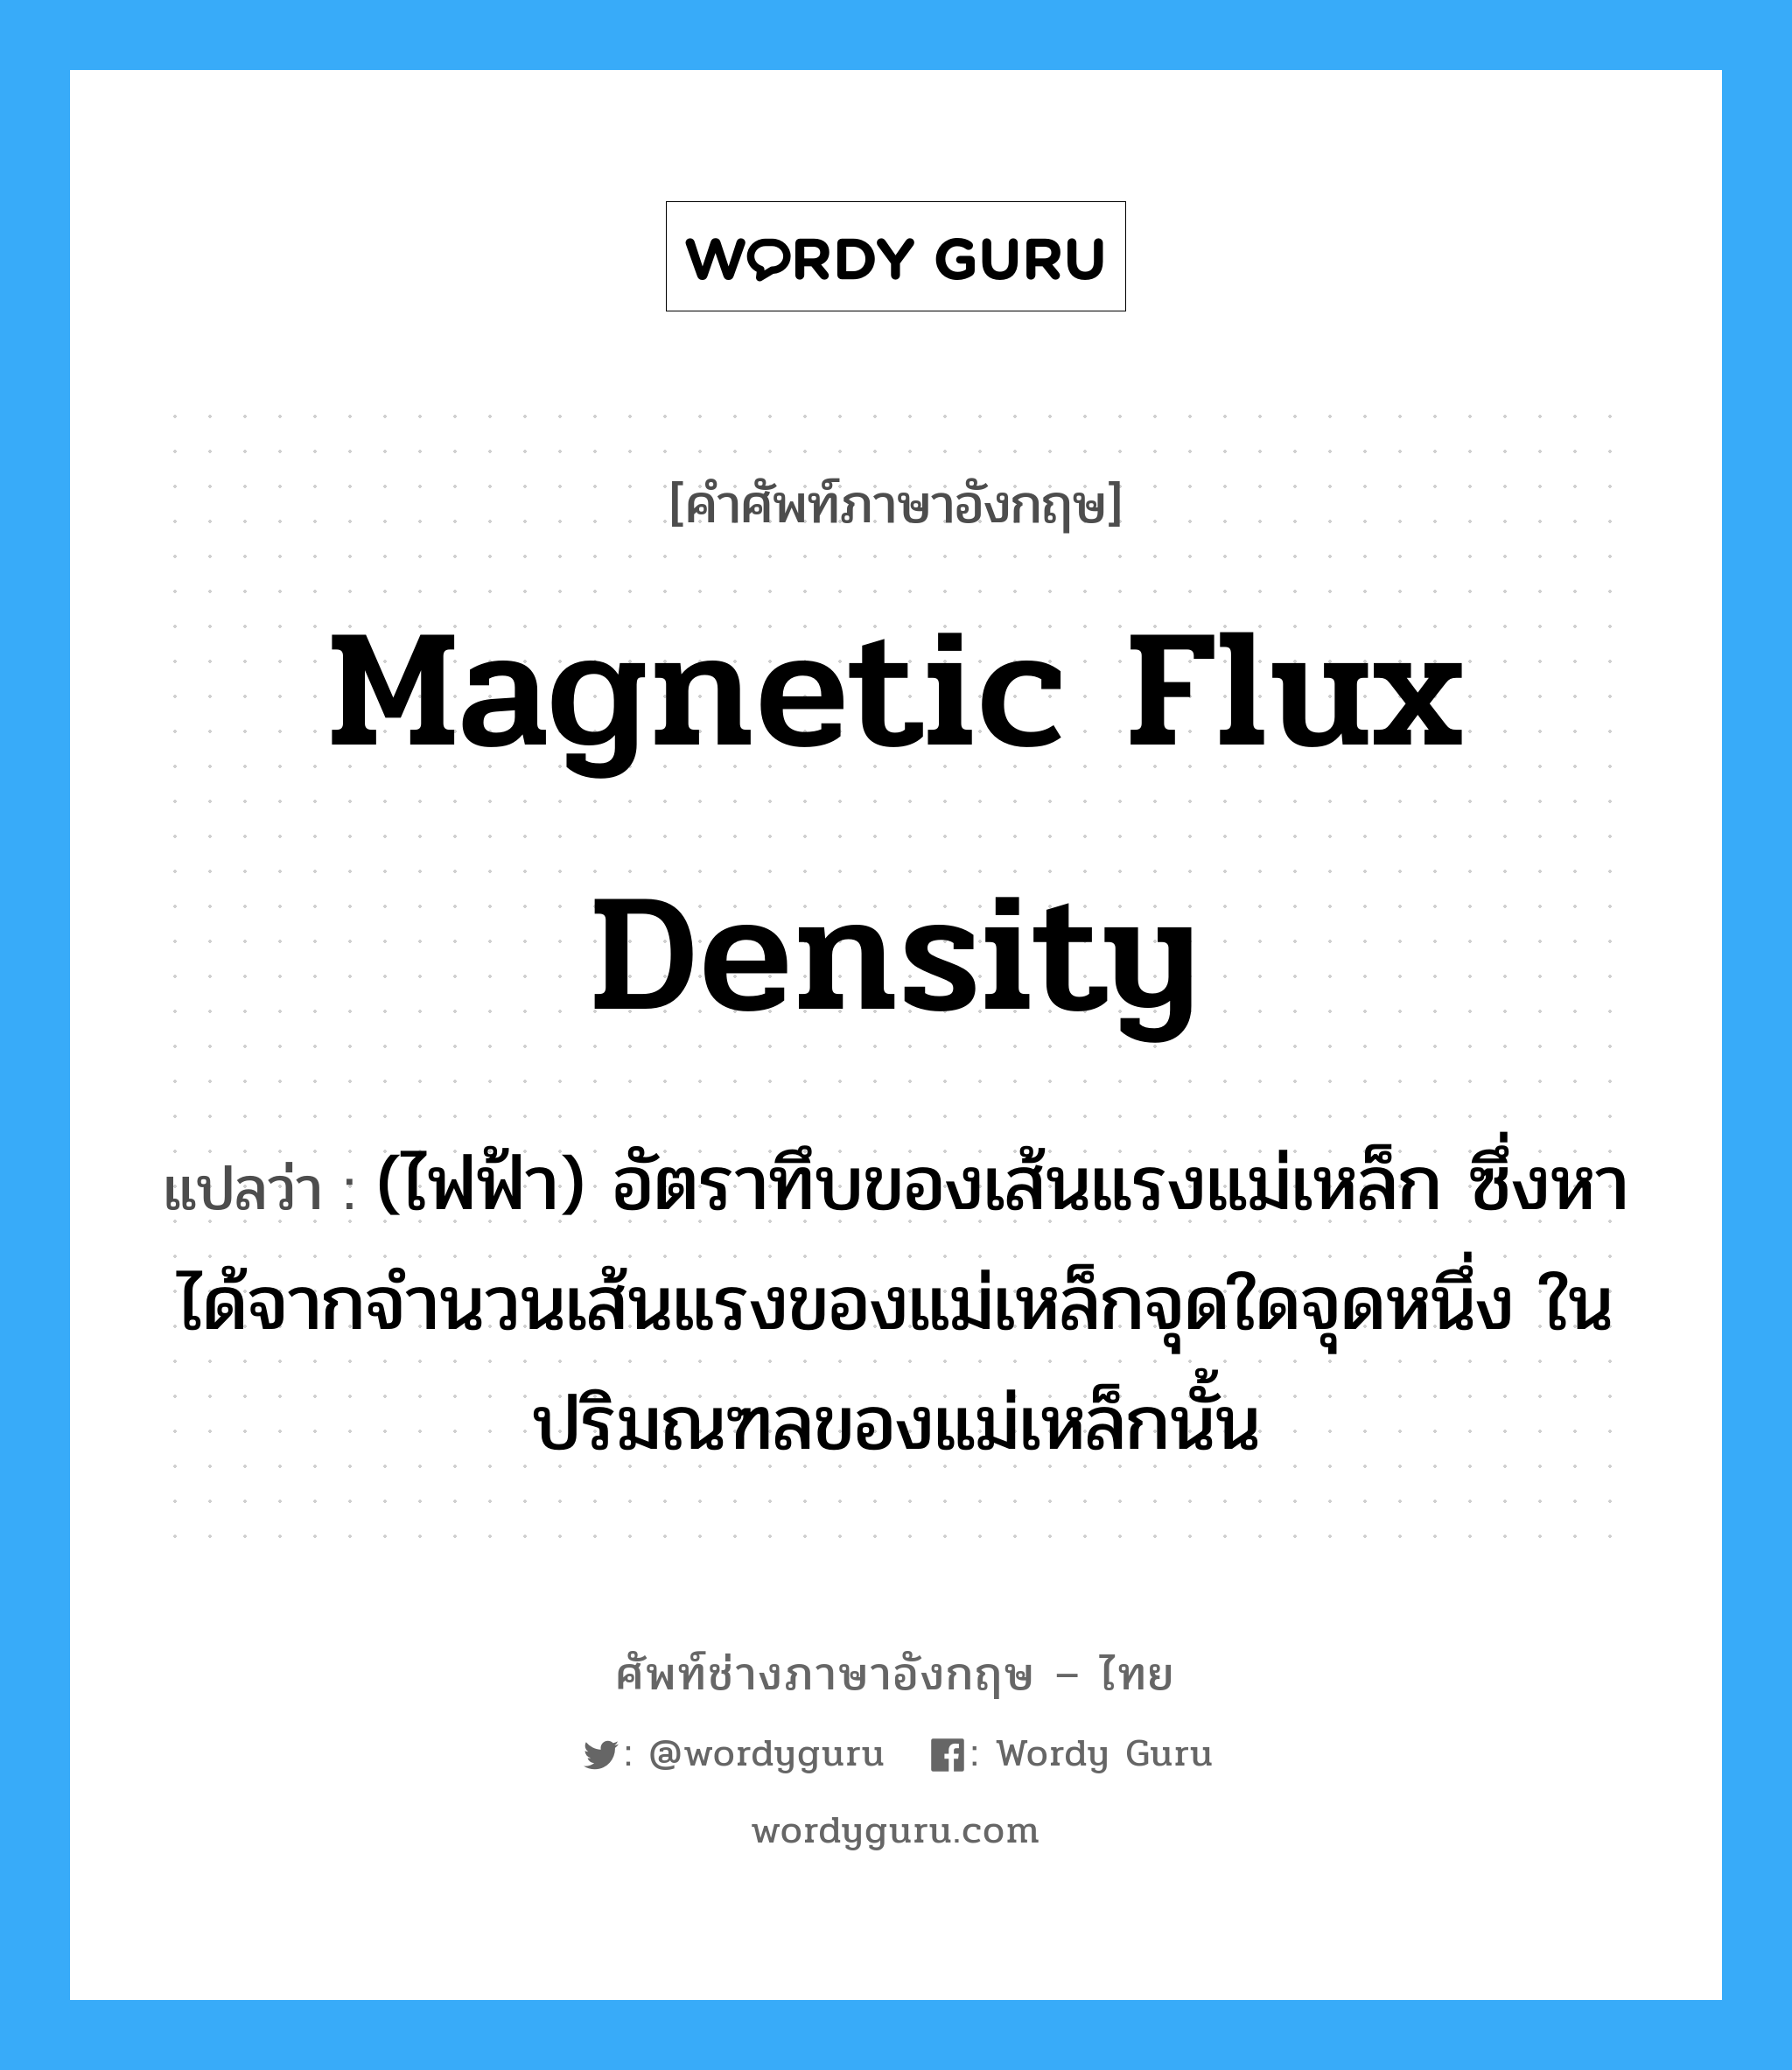 magnetic flux density แปลว่า?, คำศัพท์ช่างภาษาอังกฤษ - ไทย magnetic flux density คำศัพท์ภาษาอังกฤษ magnetic flux density แปลว่า (ไฟฟ้า) อัตราทึบของเส้นแรงแม่เหล็ก ซึ่งหาได้จากจำนวนเส้นแรงของแม่เหล็กจุดใดจุดหนึ่ง ในปริมณฑลของแม่เหล็กนั้น